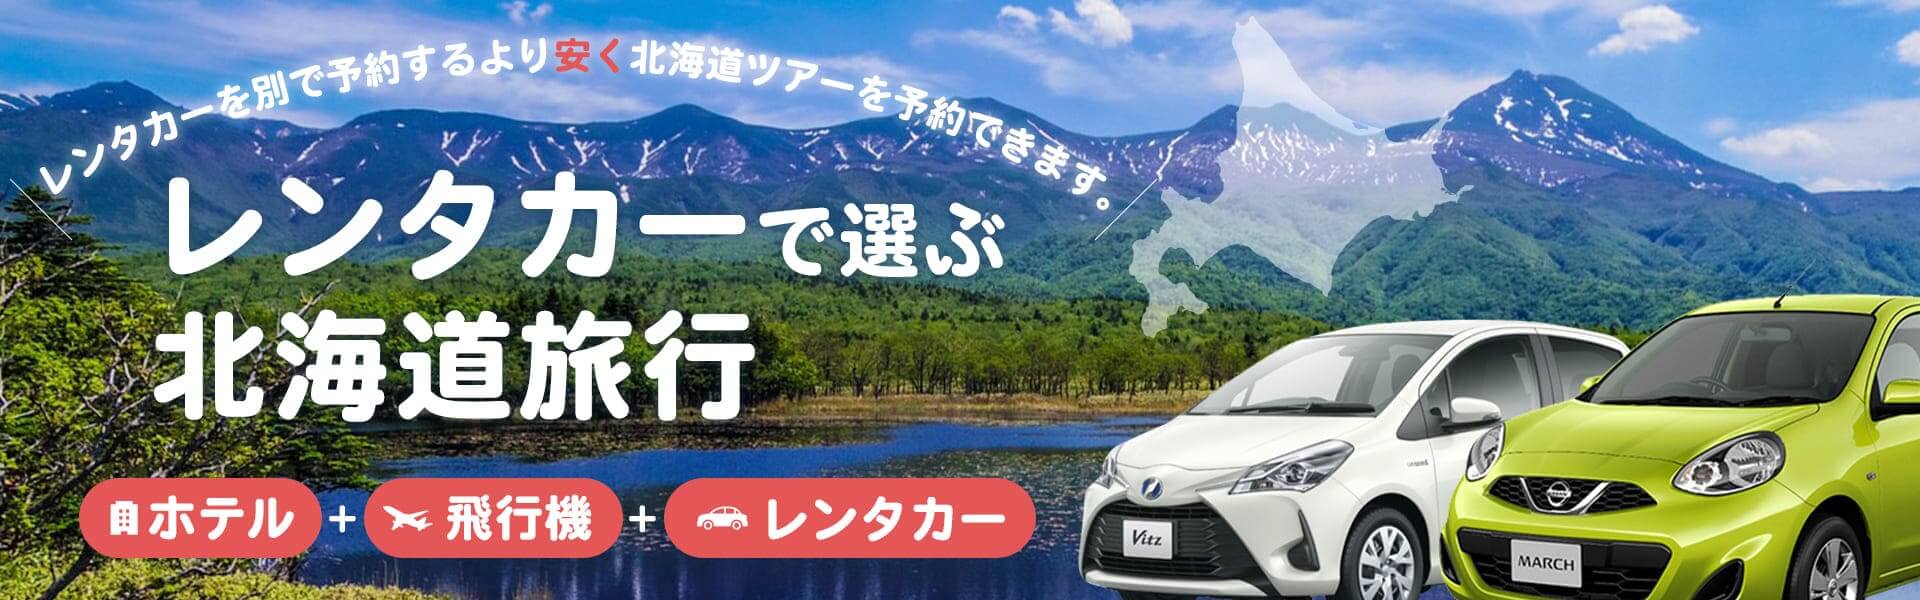 レンタカーで選ぶ北海道旅行